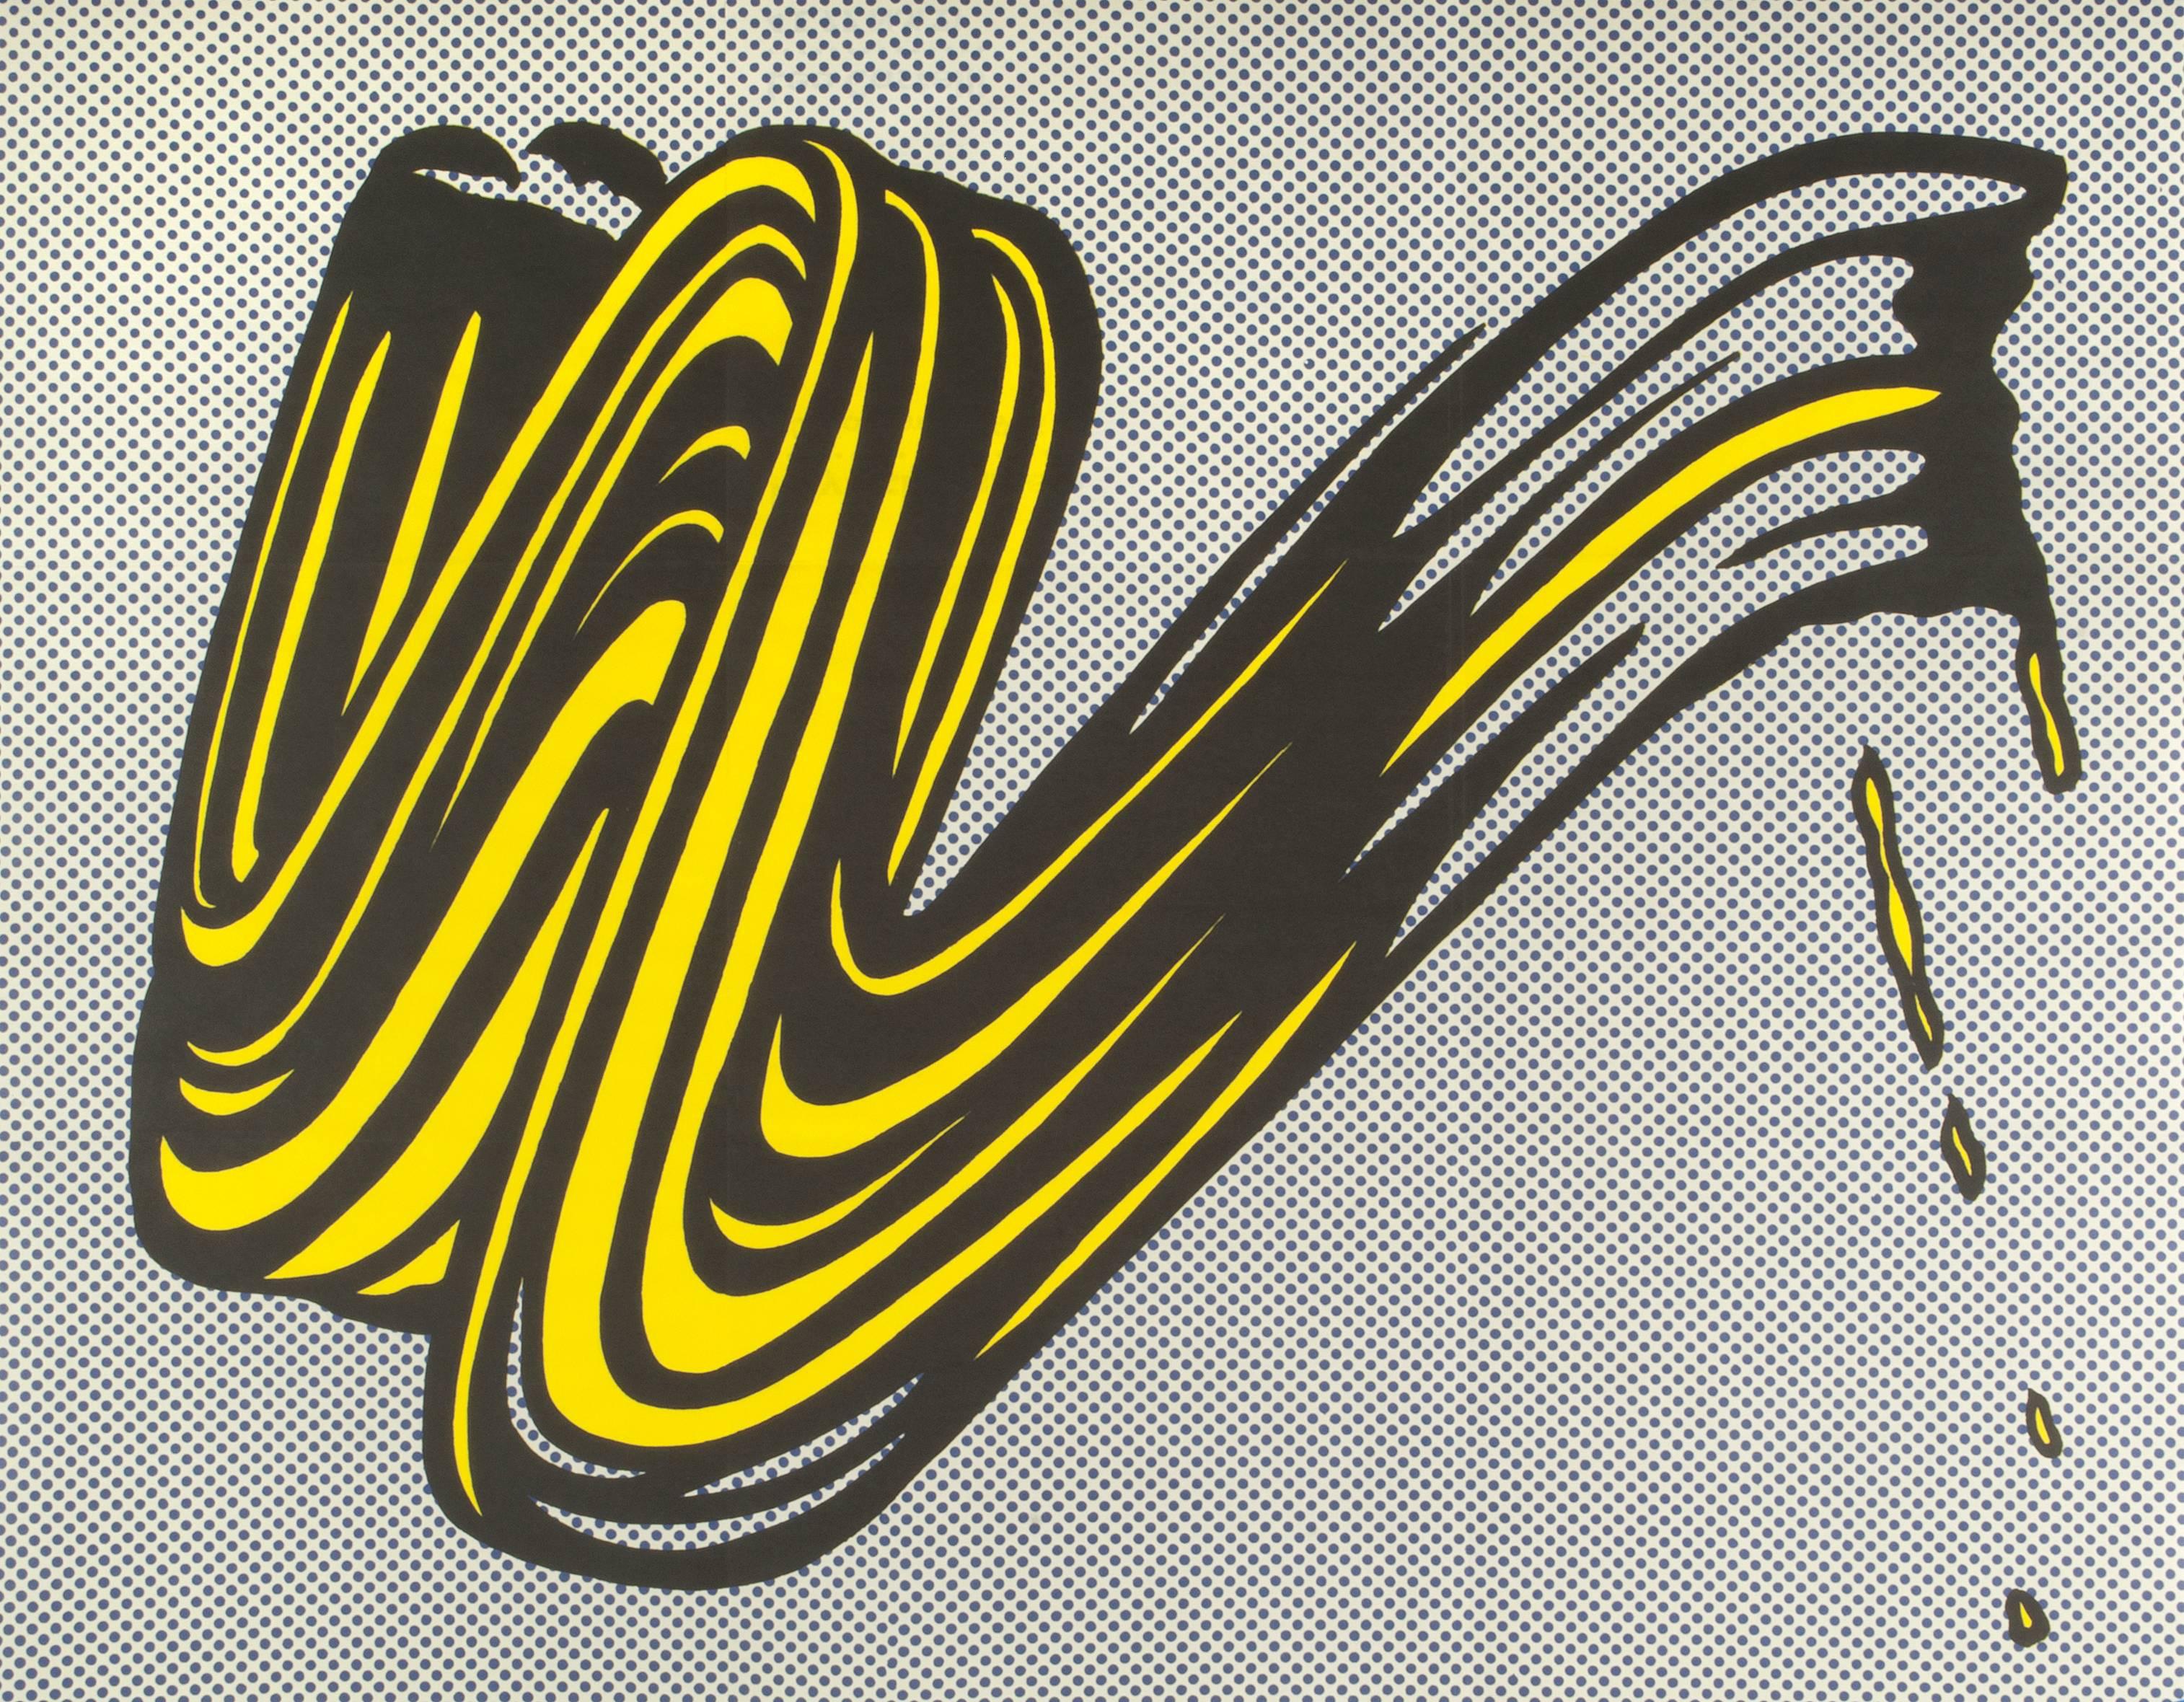 Roy Lichtenstein Abstract Print - Brushstroke (Castelli mailer)